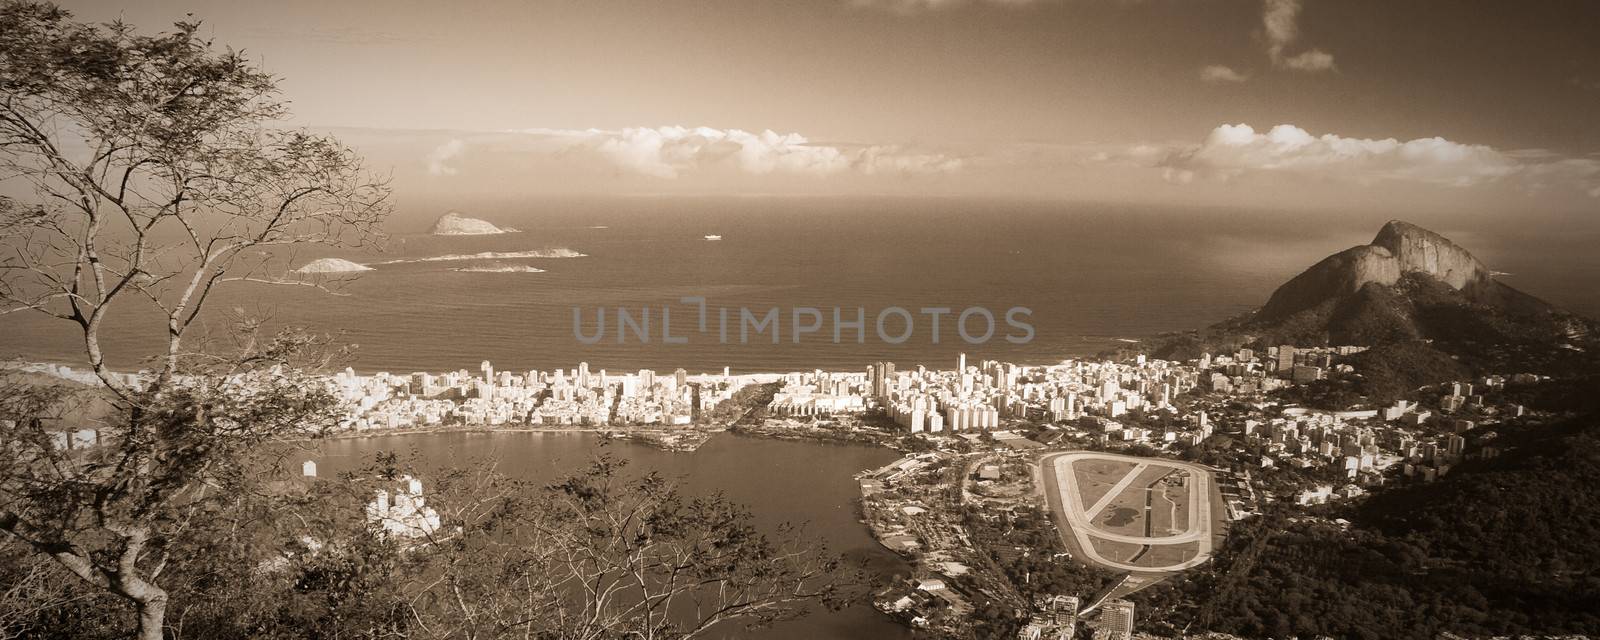 High angle view of Hipodromo da Gavea in Rio de Janeiro, Brazil